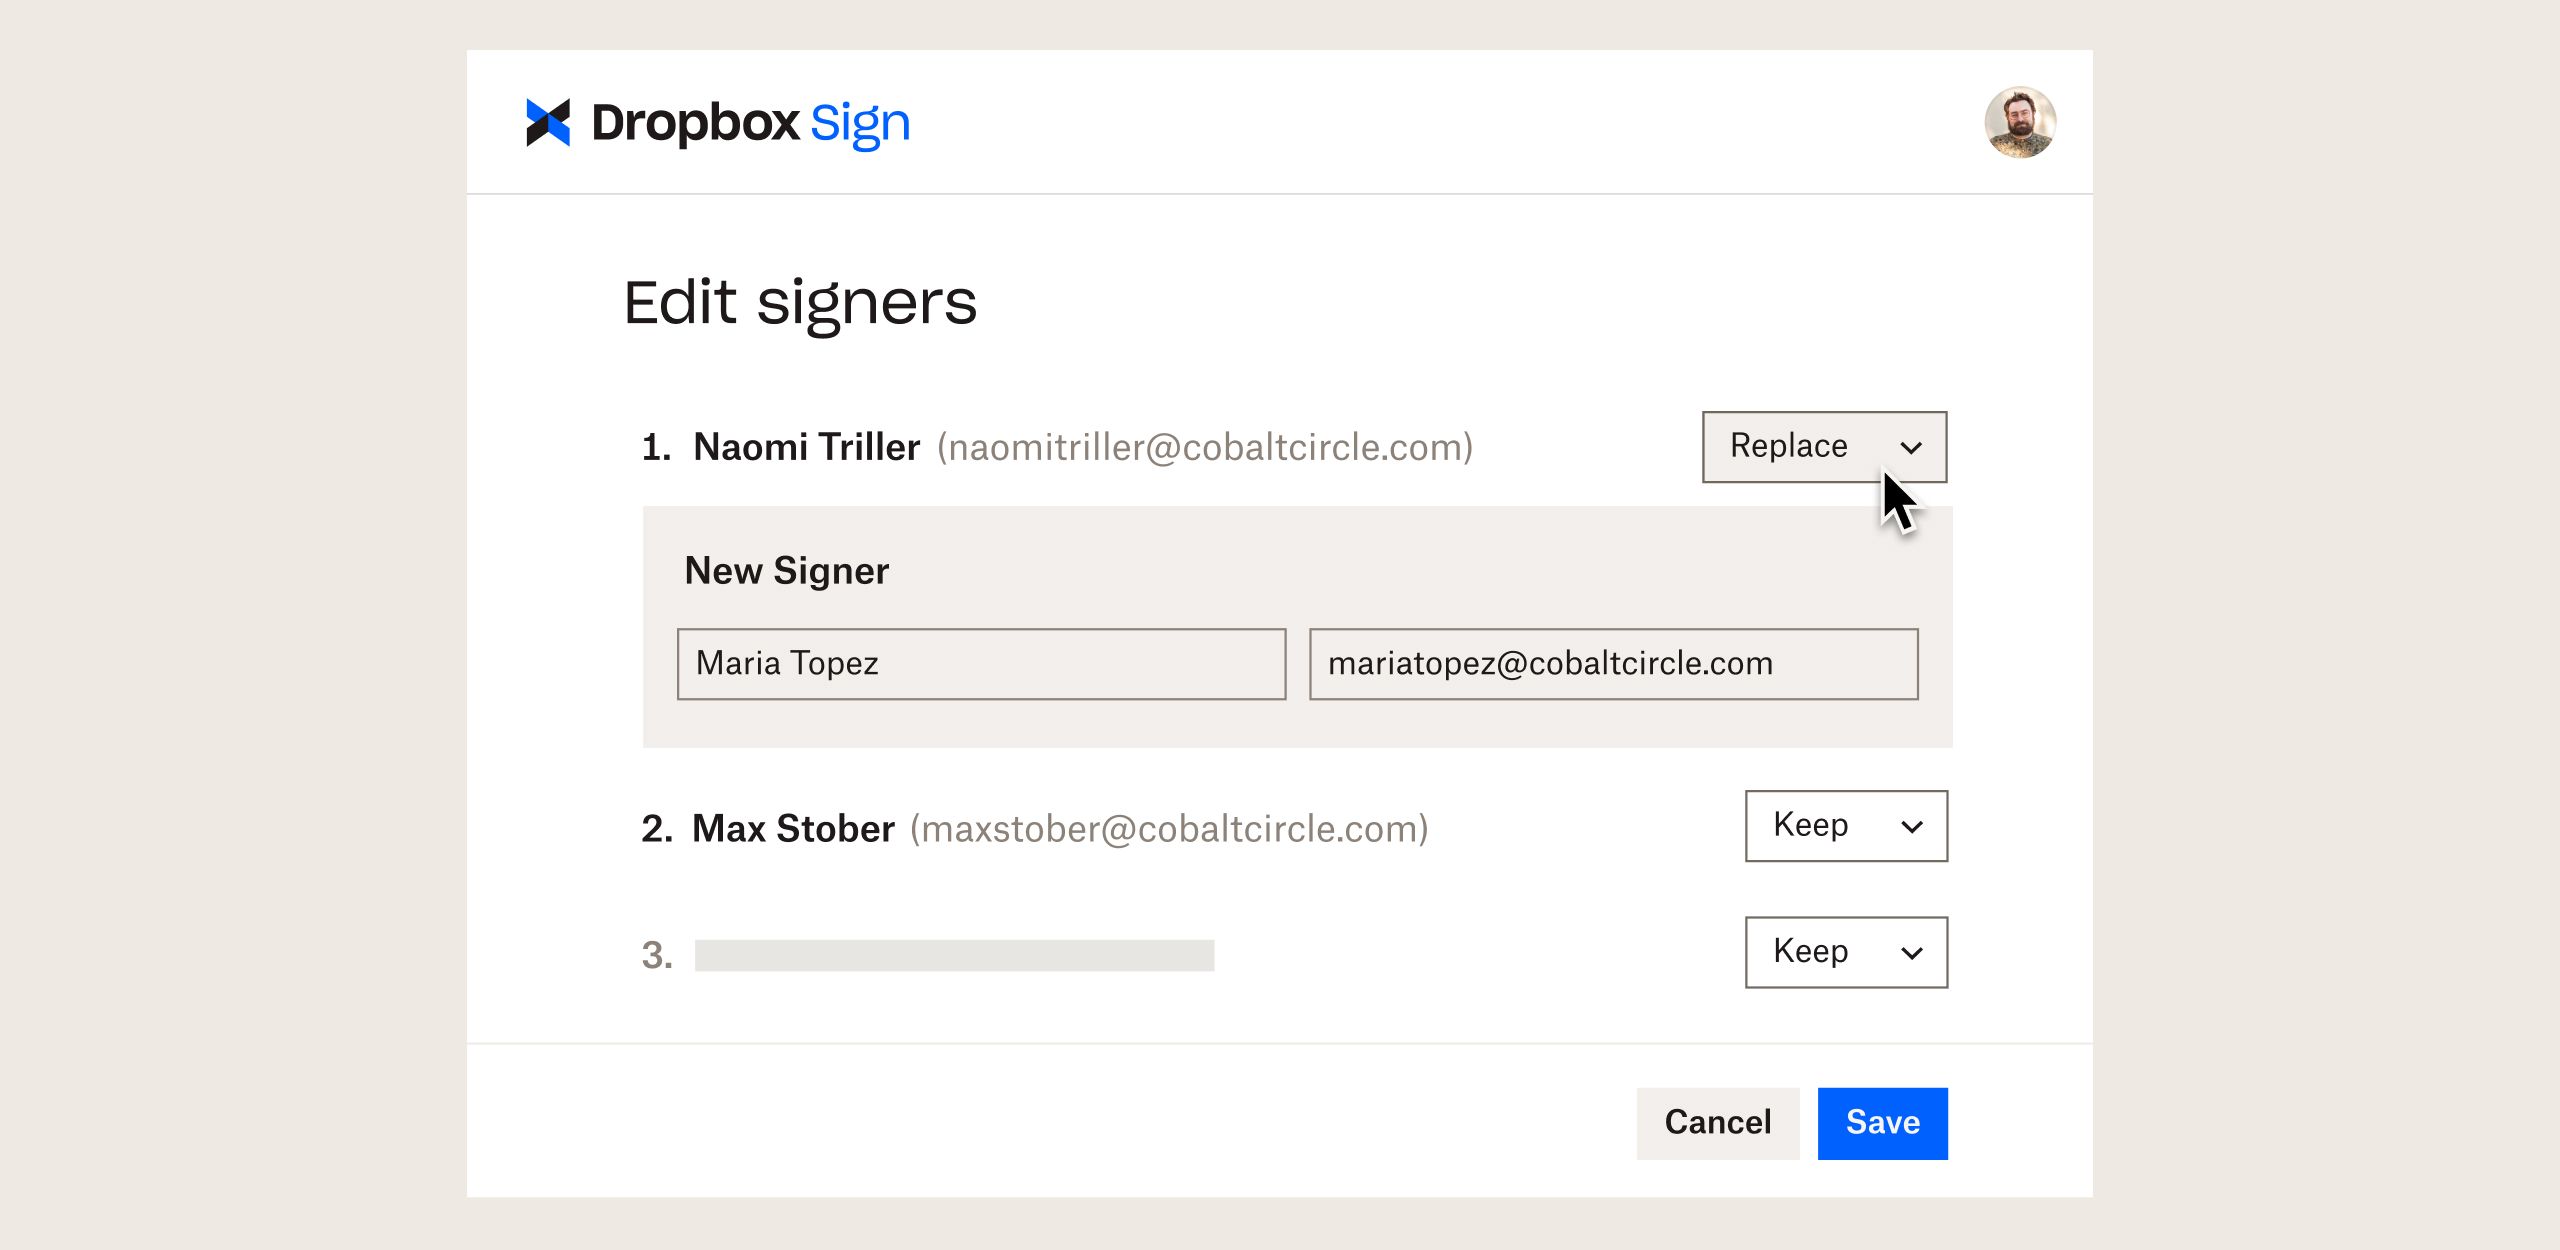 Інтерфейс продукту показує, як керувати підписантами в Dropbox Sign